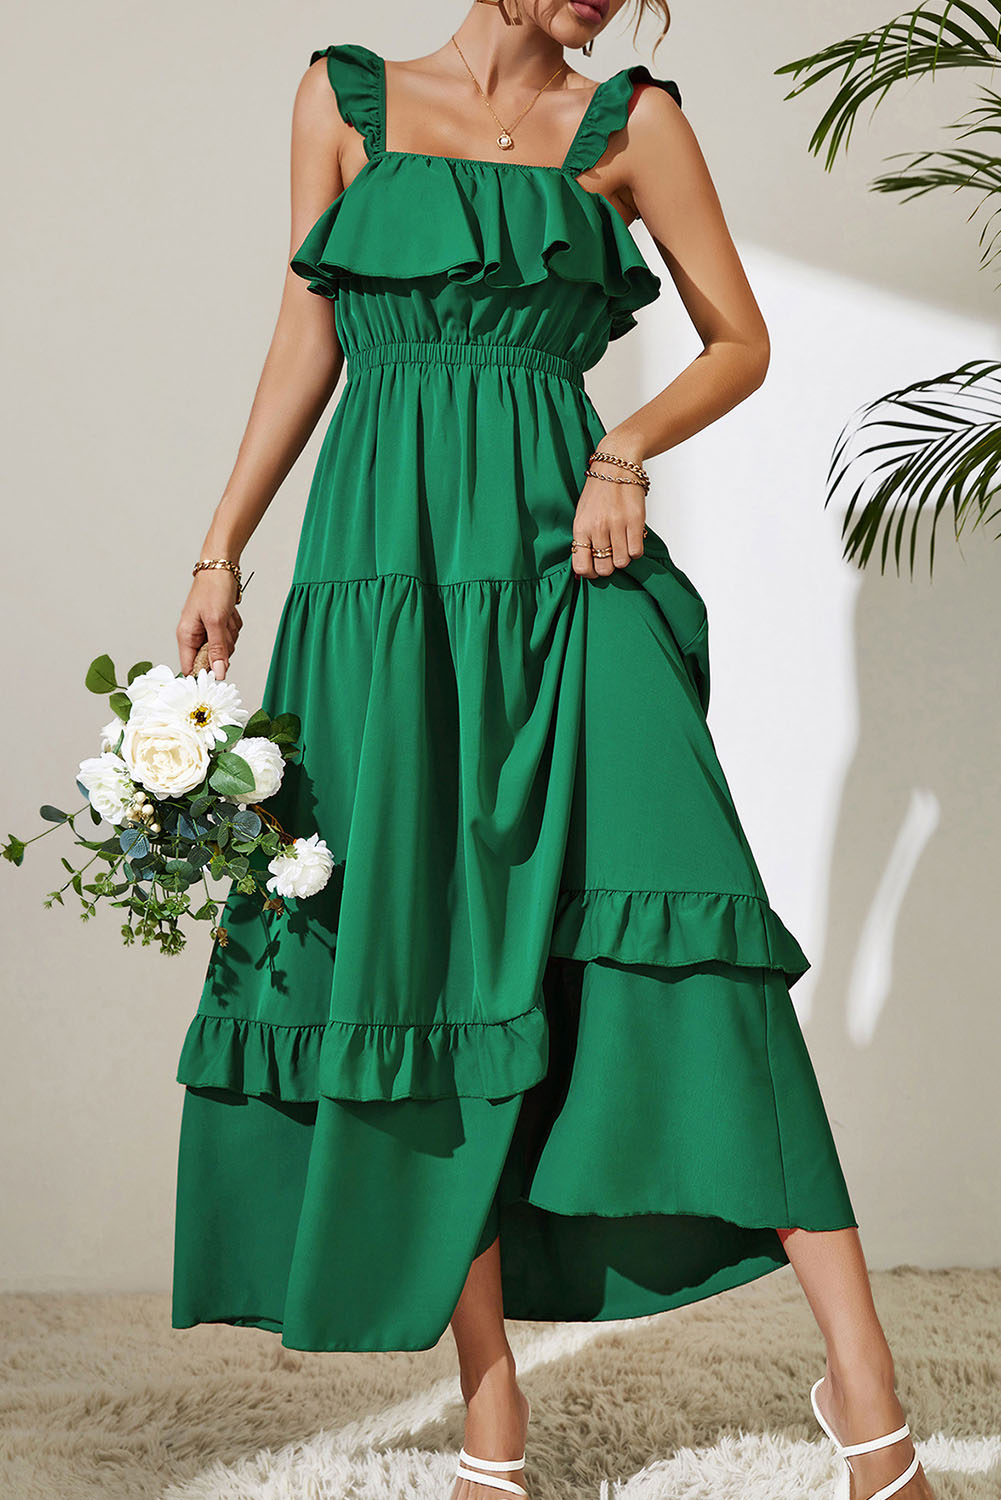 Green Ruffled Long Sleeveless Tiered Summer Wedding Guest Dress ...